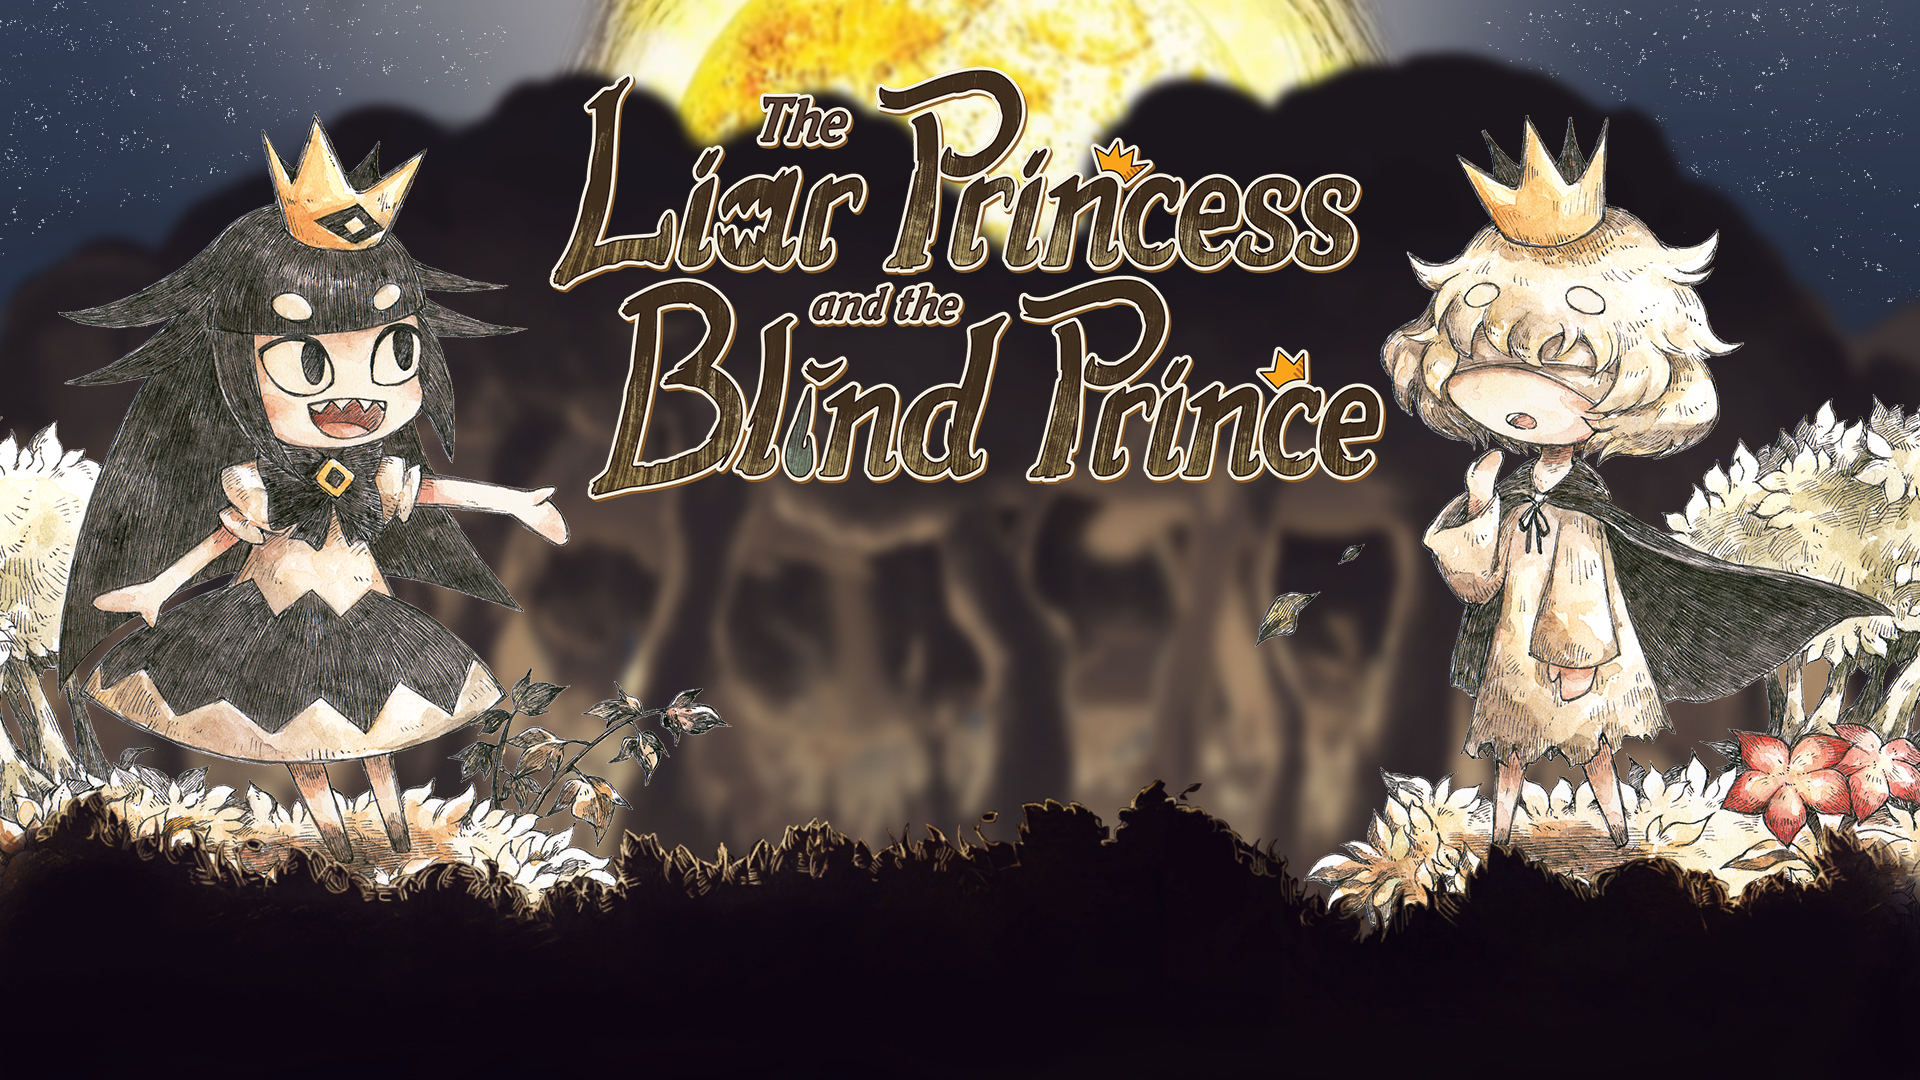 لعبة المغامرات الرائعة "The Liar Princess and the Blind Prince" من NIS ستأتي إلى iOS و Android الأسبوع المقبل كإصدار ممتاز 82